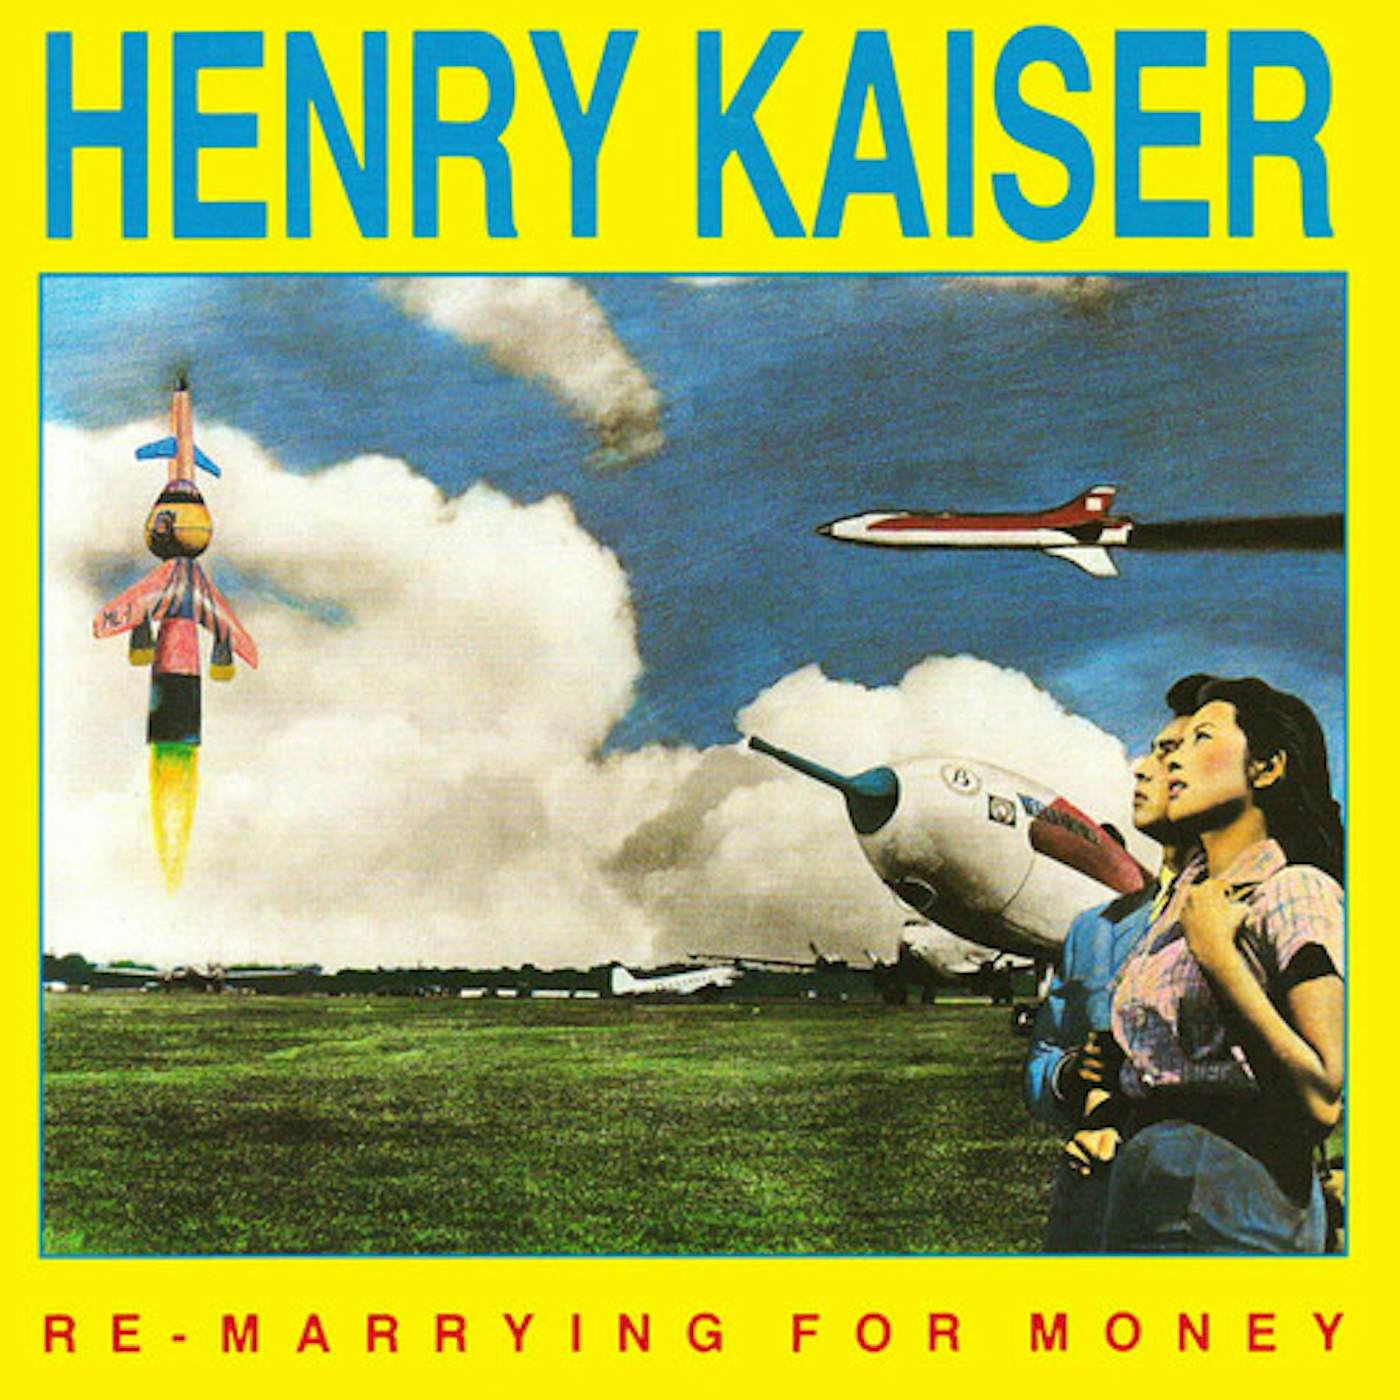 Henry Kaiser RE-MARRYING FOR MONEY CD